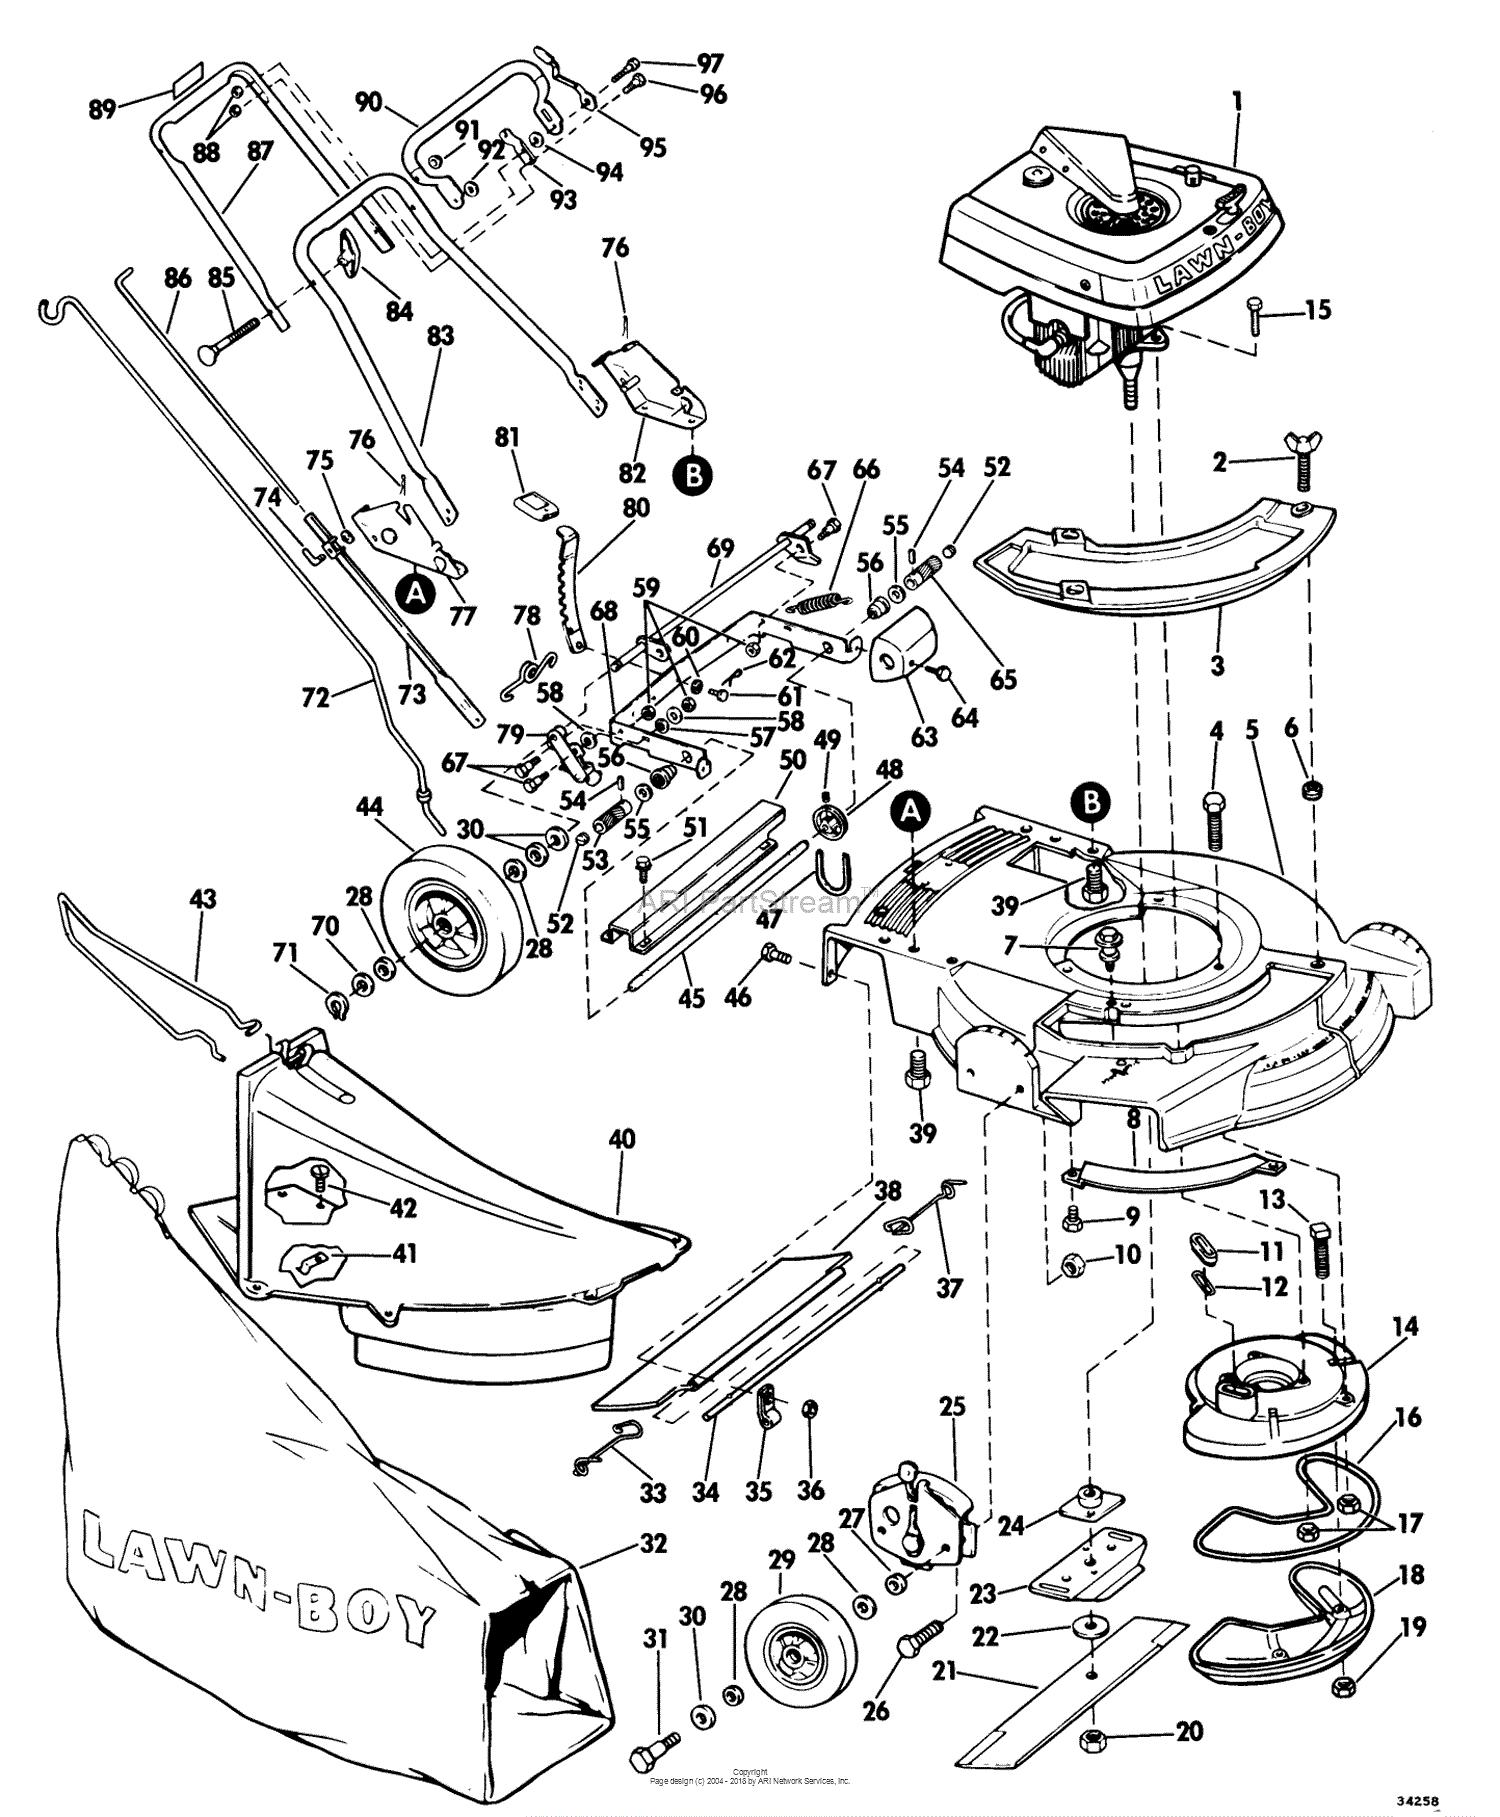 Lawn Mower Parts Diagram.